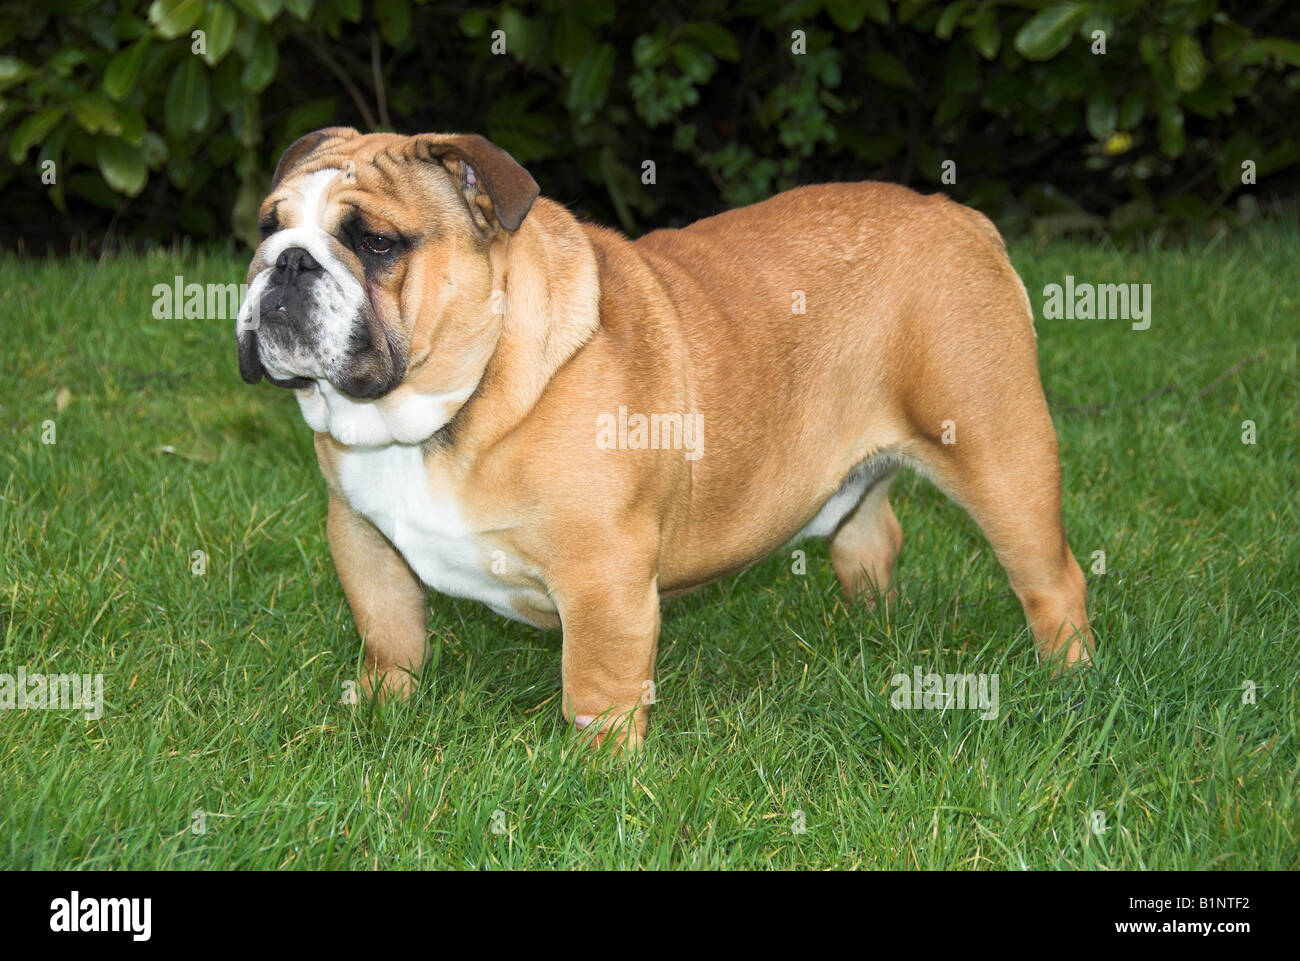 Bulldog inglesi o Bulldog inglese, è una dimensione medio-razza di cane che ha avuto origine in Inghilterra. Foto Stock